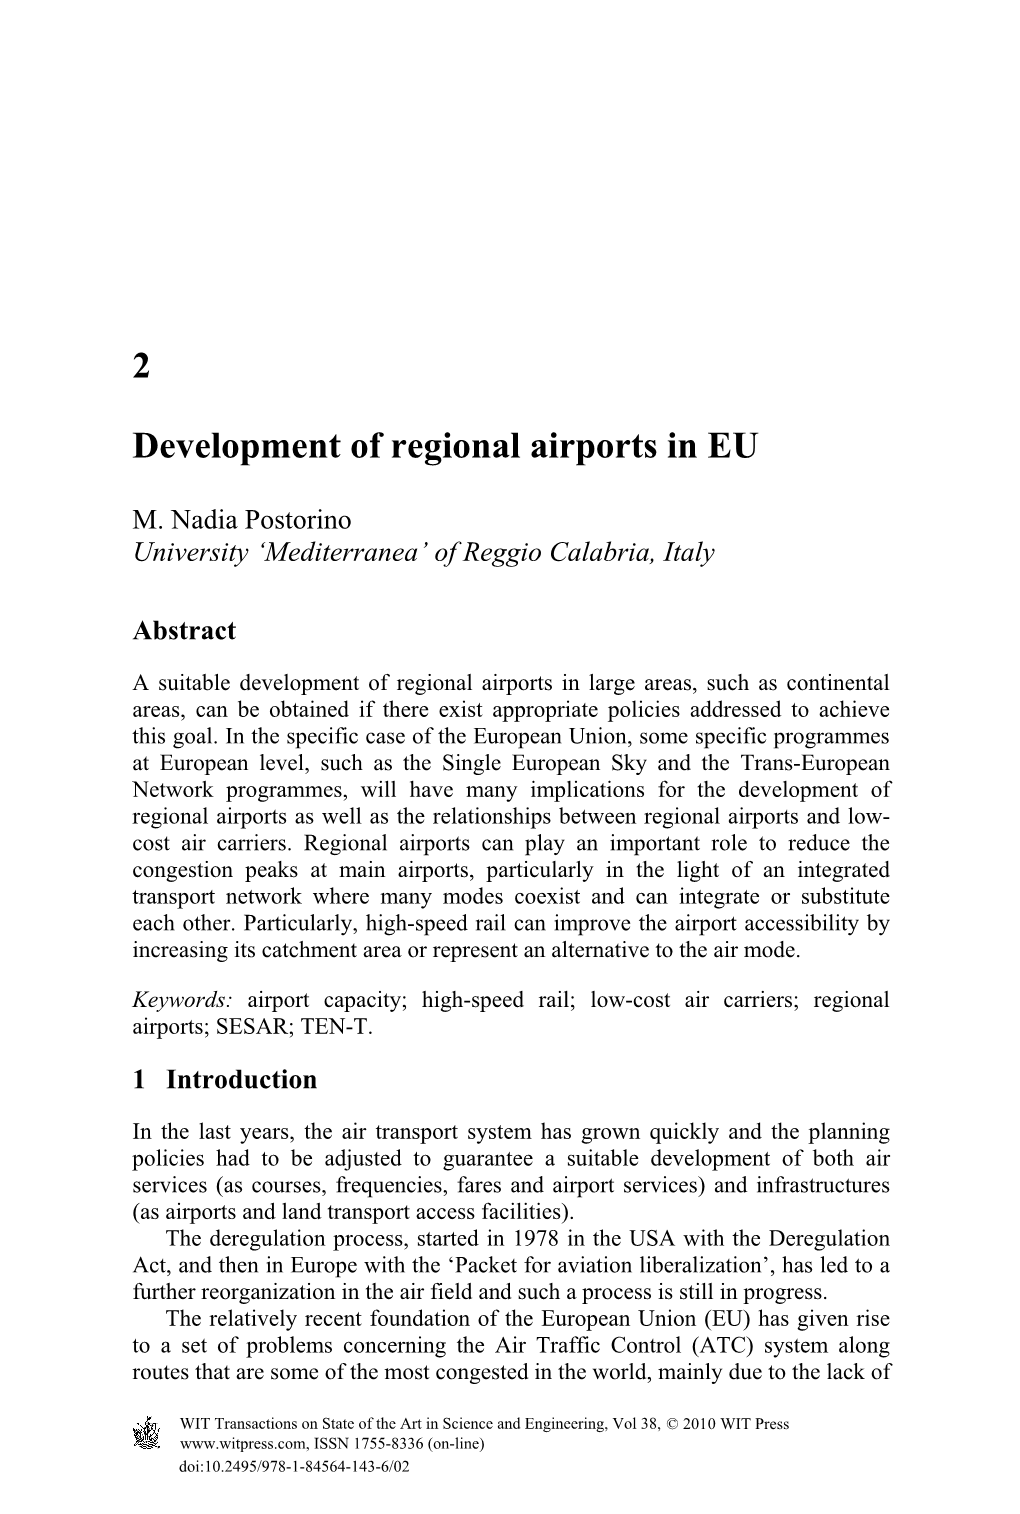 2 Development of Regional Airports in EU